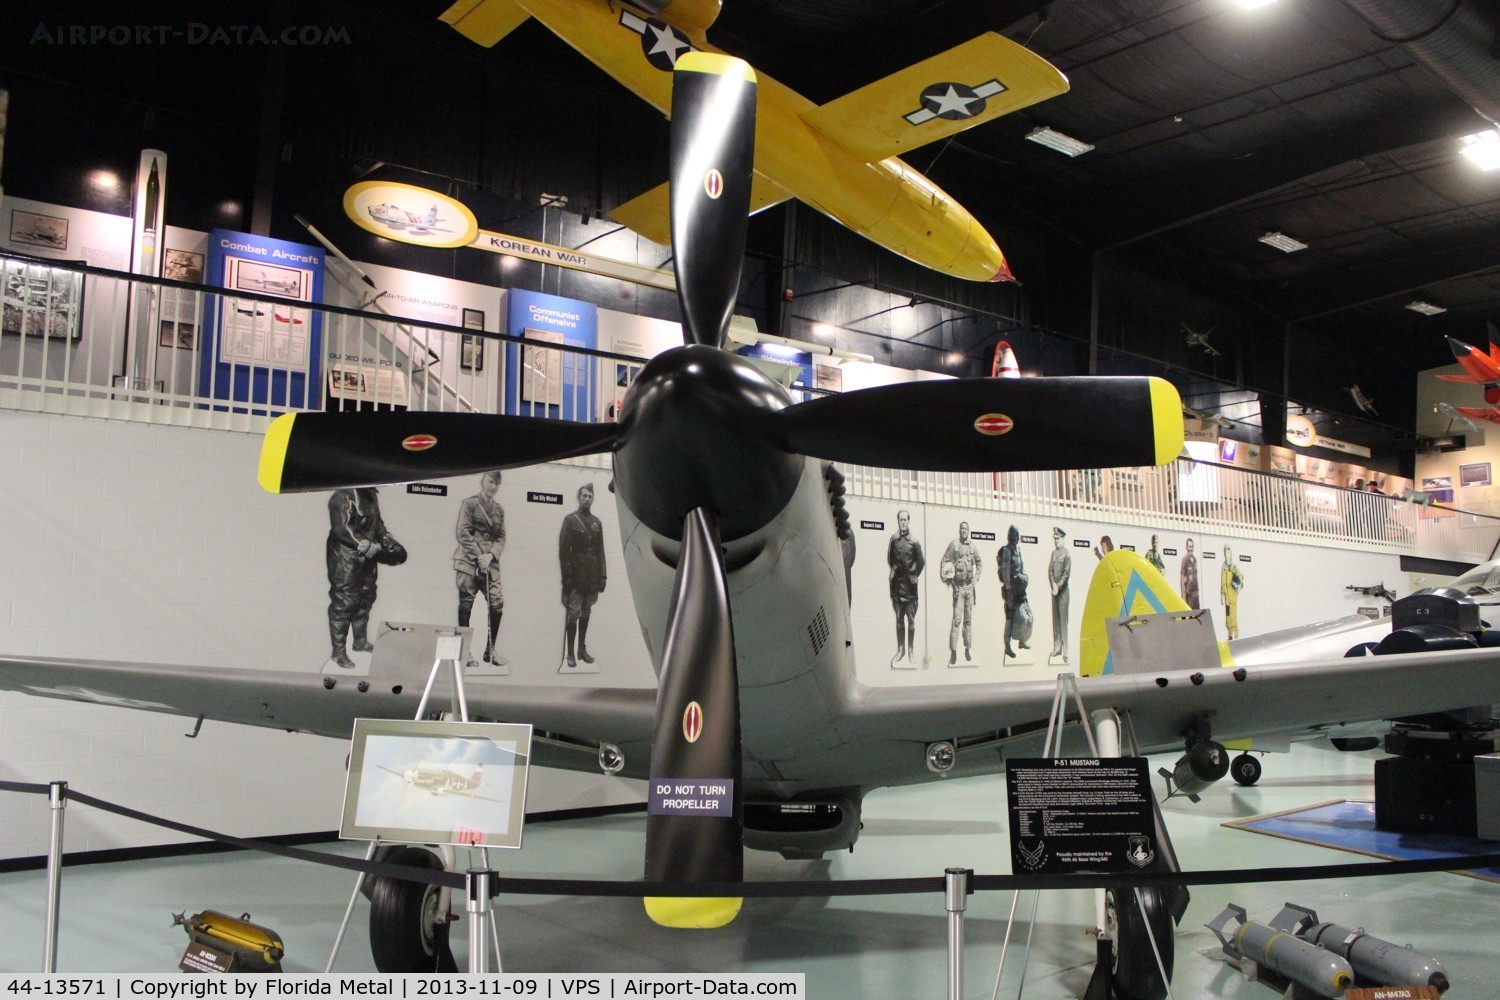 44-13571, 1944 North American P-51D Mustang C/N 109-27204, P-51D at Air Force Armament Museum